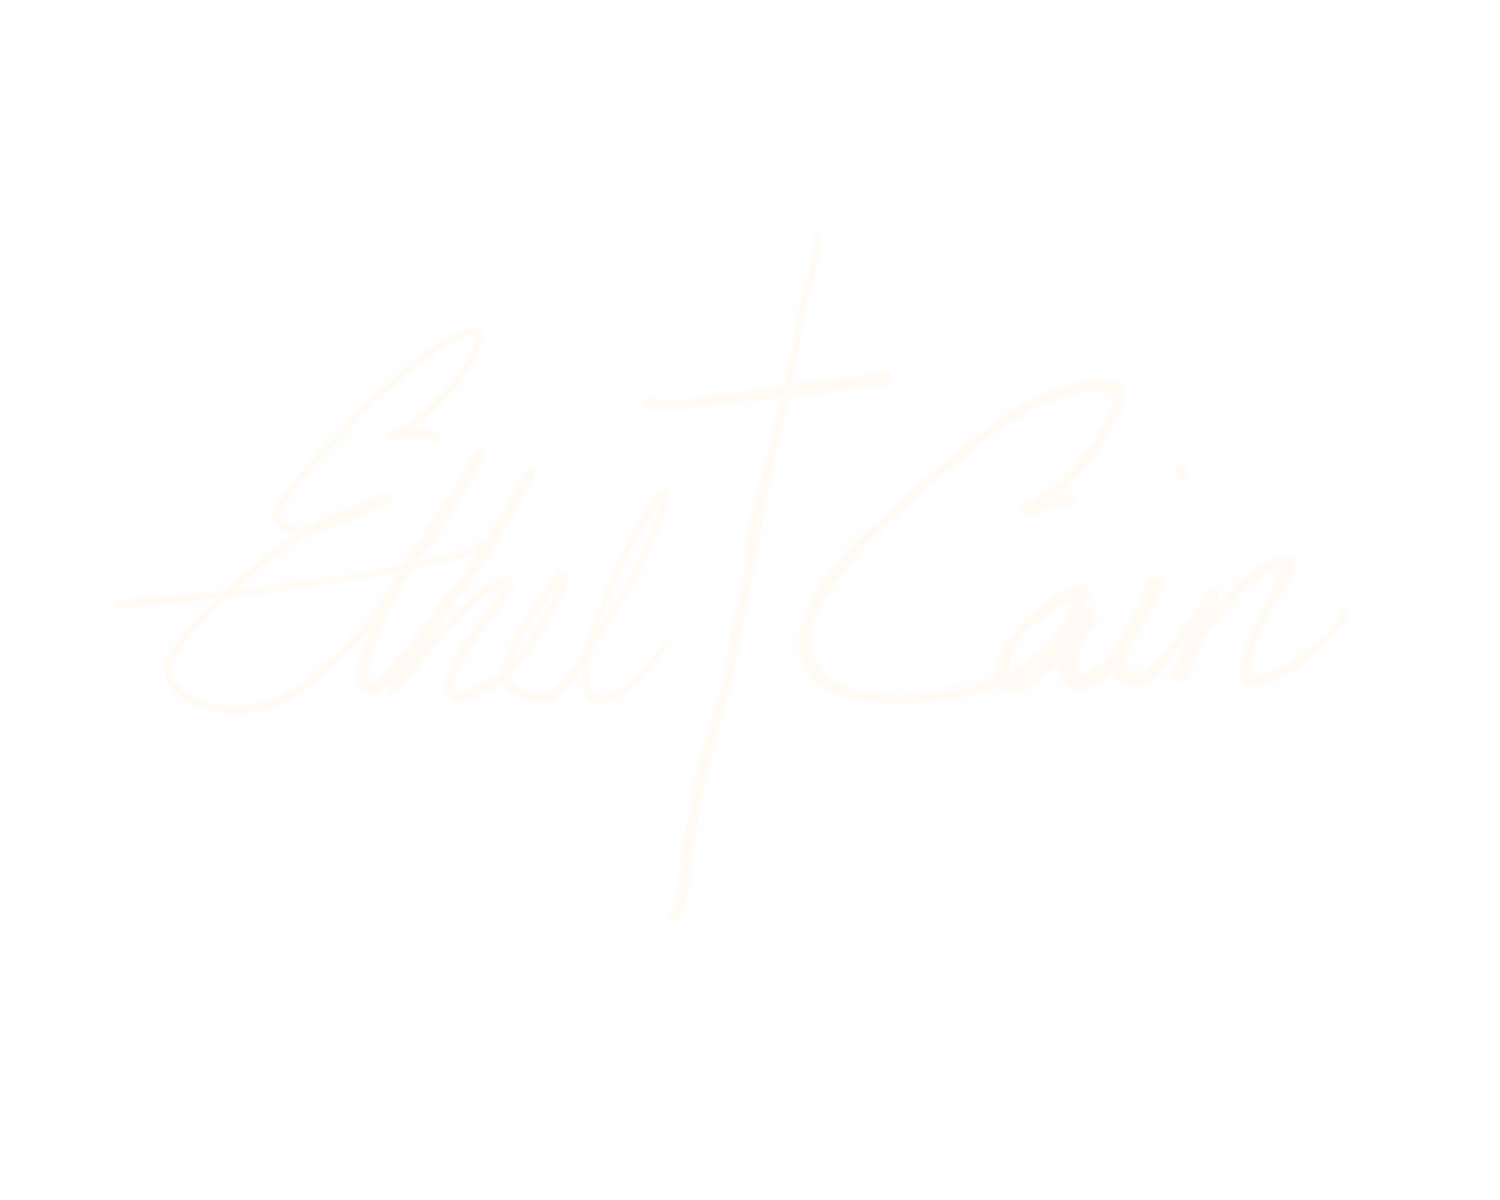 Ethel Cain